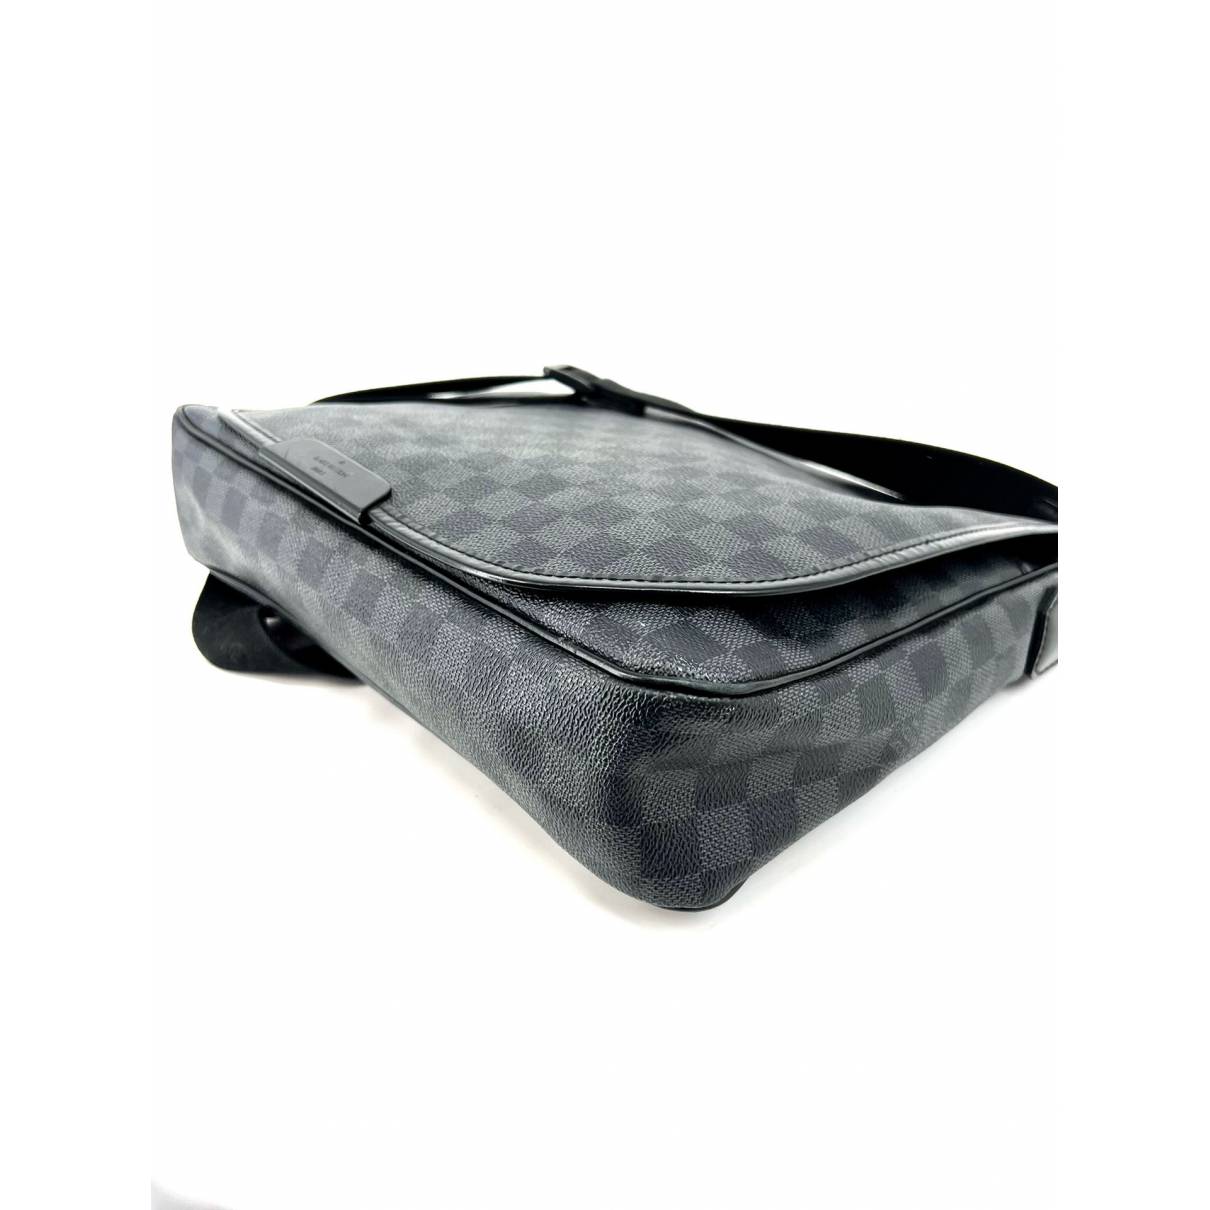 Daniel mm satchel cloth satchel Louis Vuitton Black in Cloth - 22872017